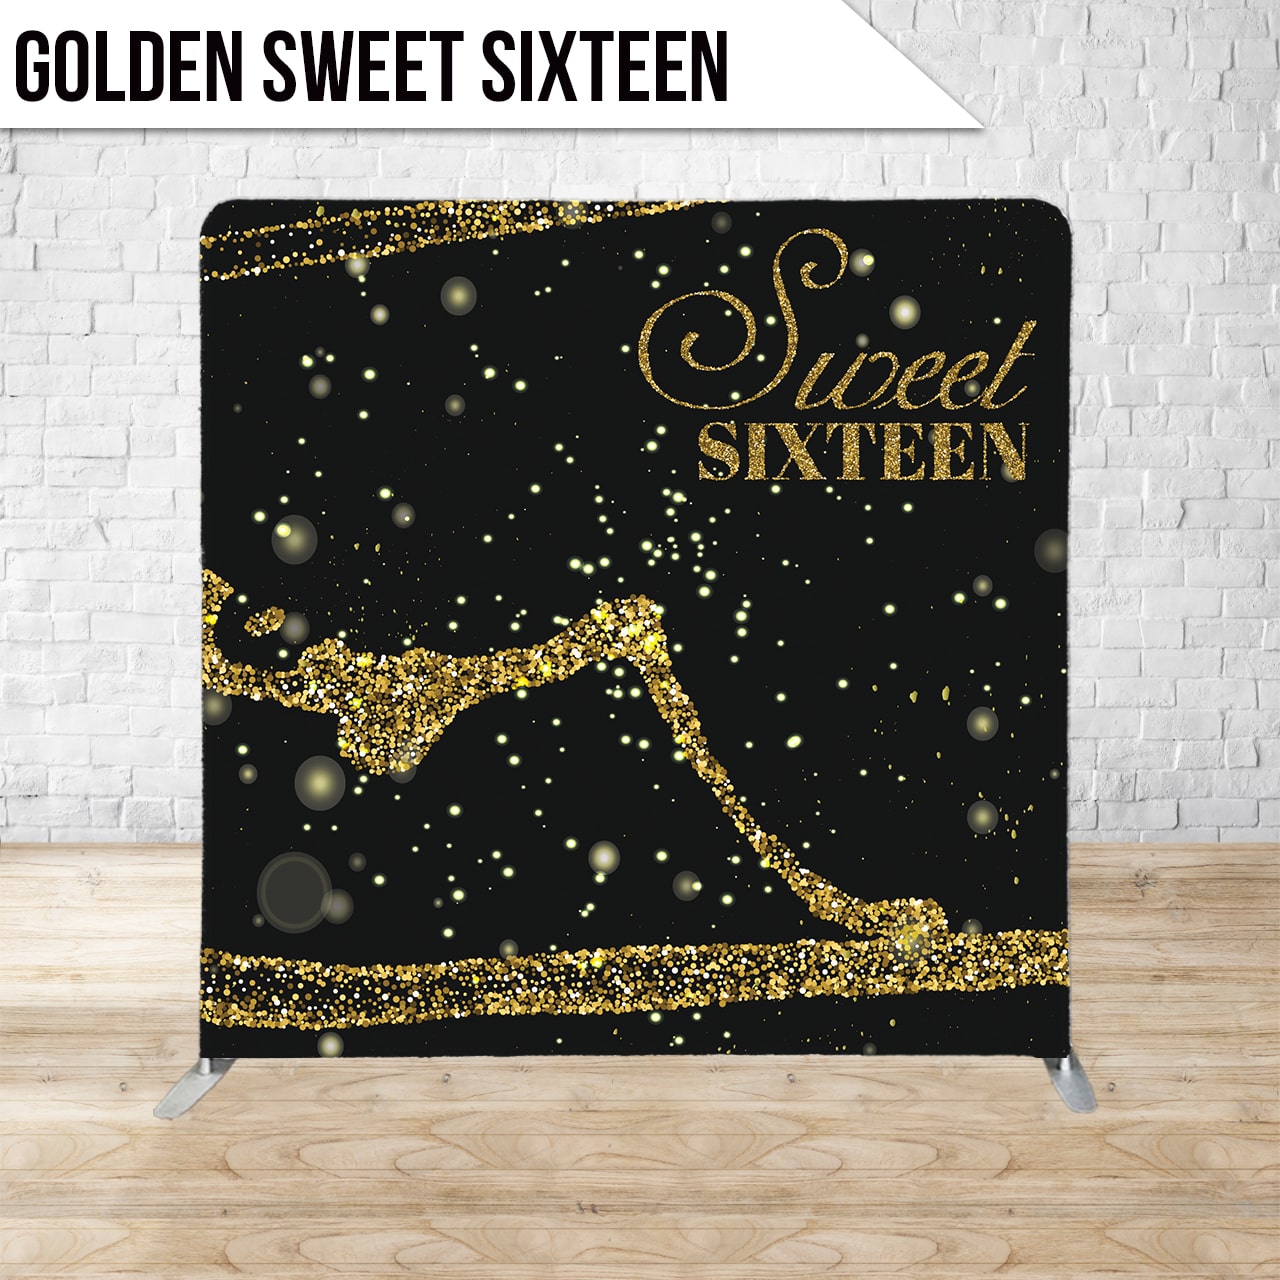 GoldenSweetSixteen